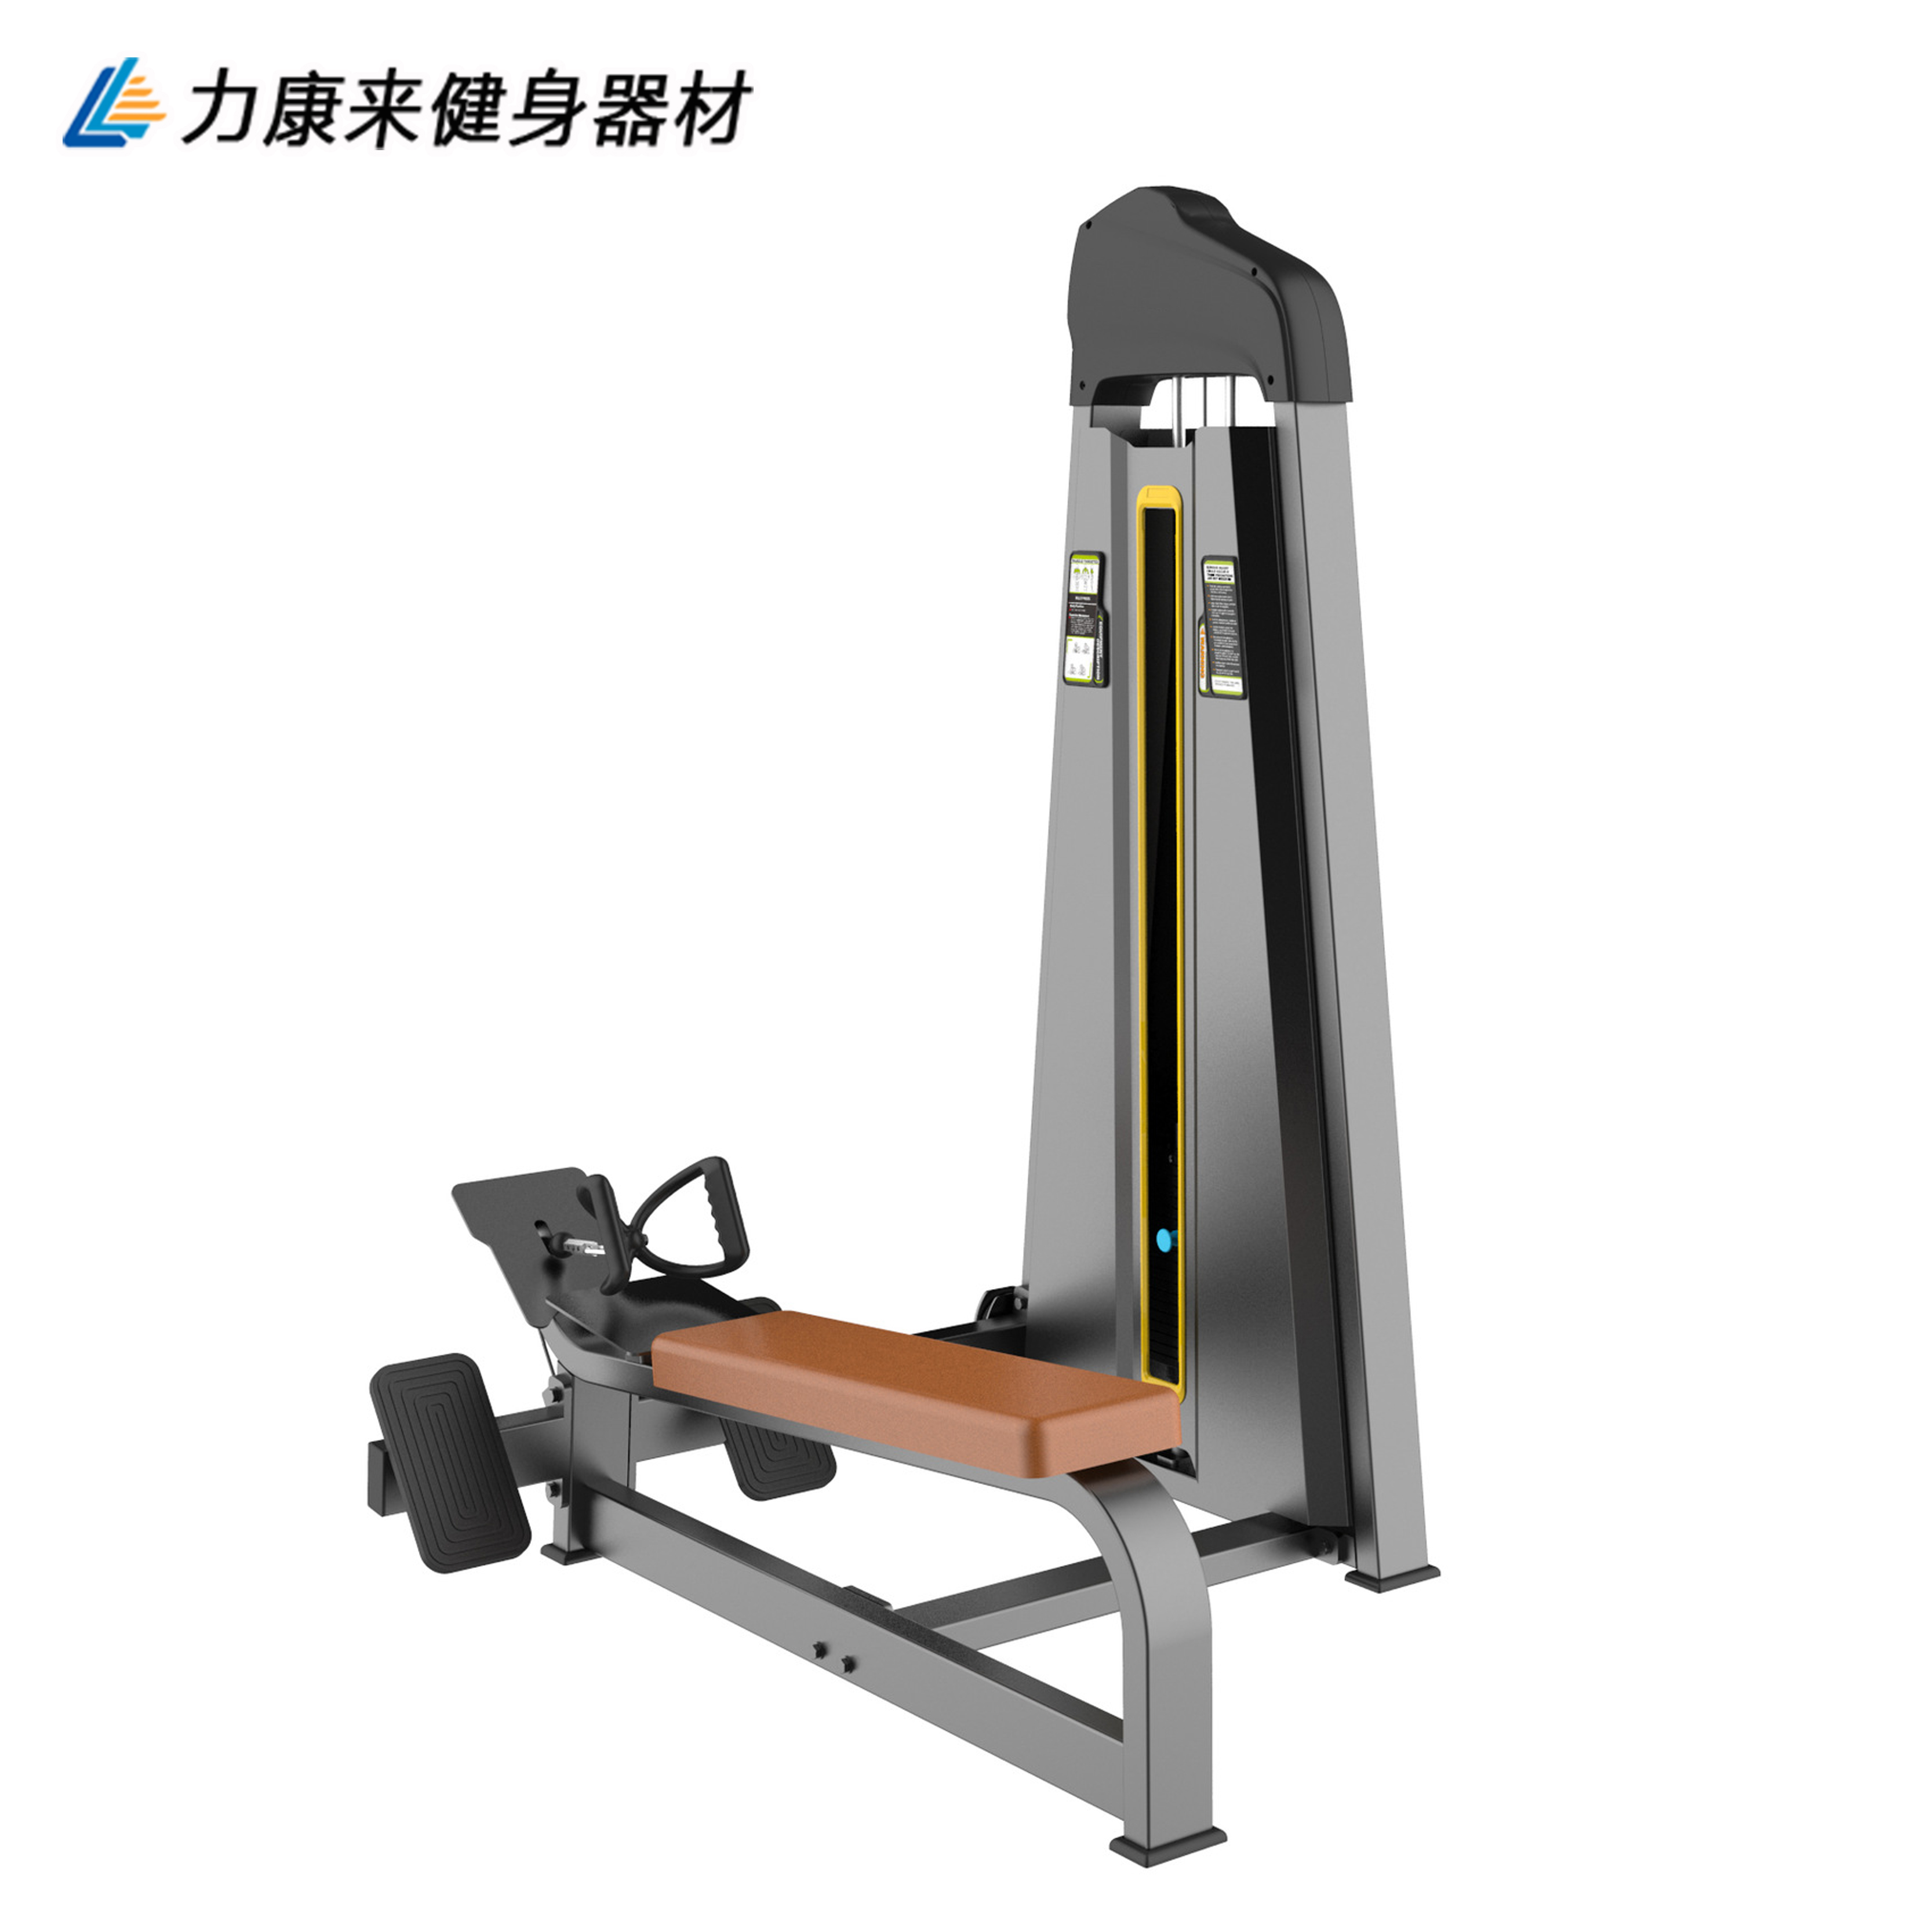 商用坐式低拉背训练器 背部肌肉力量划艇器 坐式背肌伸展练习器